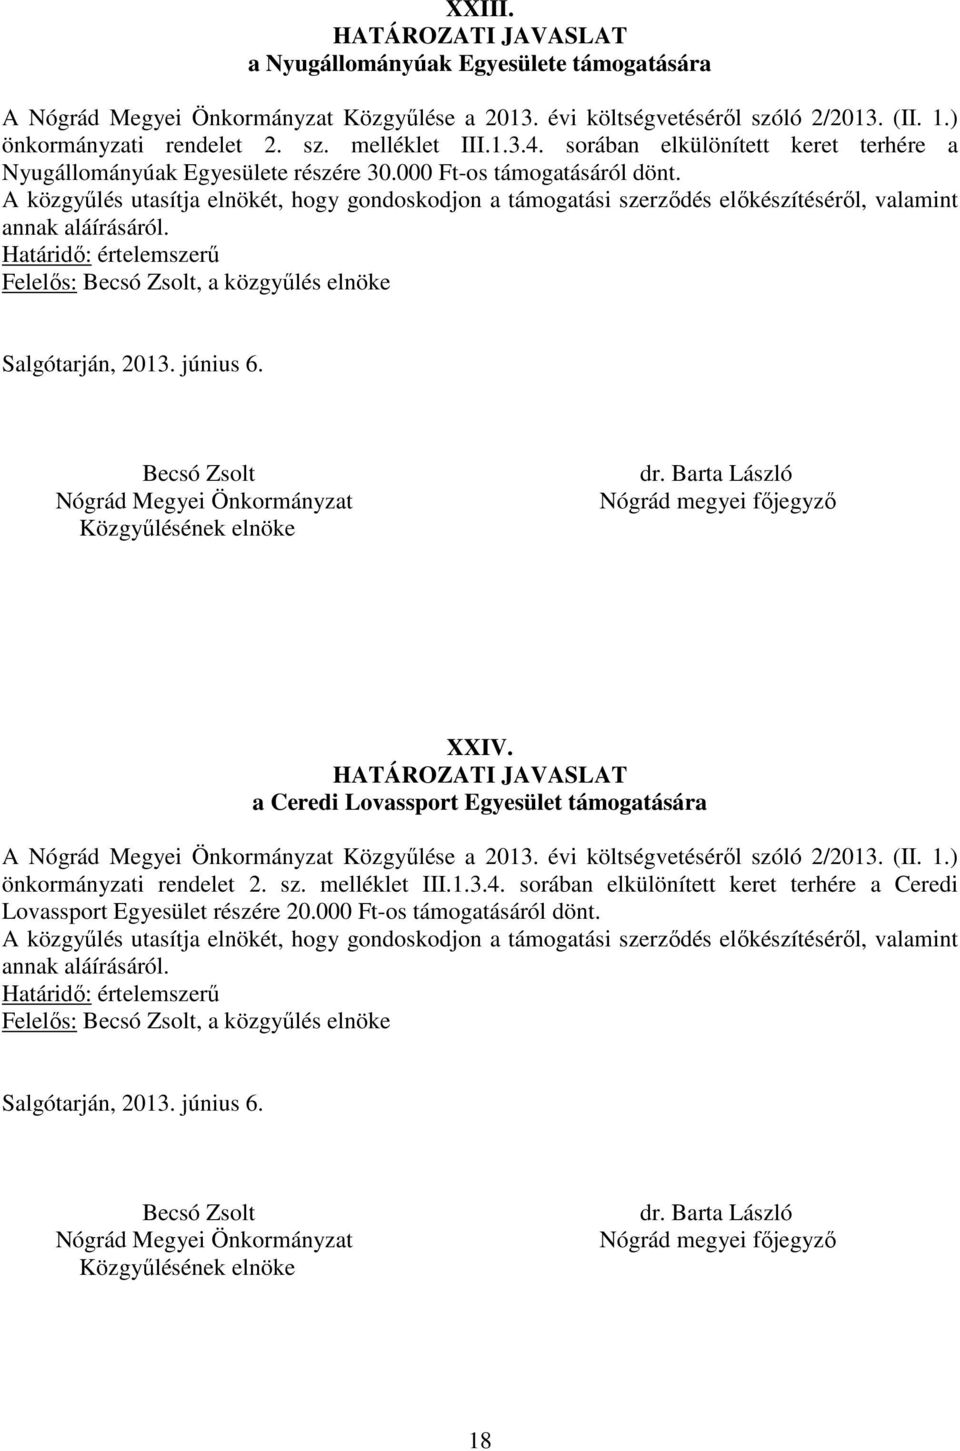 a Ceredi Lovassport Egyesület támogatására A Közgyűlése a 2013. évi költségvetéséről szóló 2/2013. (II. 1.) önkormányzati rendelet 2. sz. melléklet III.